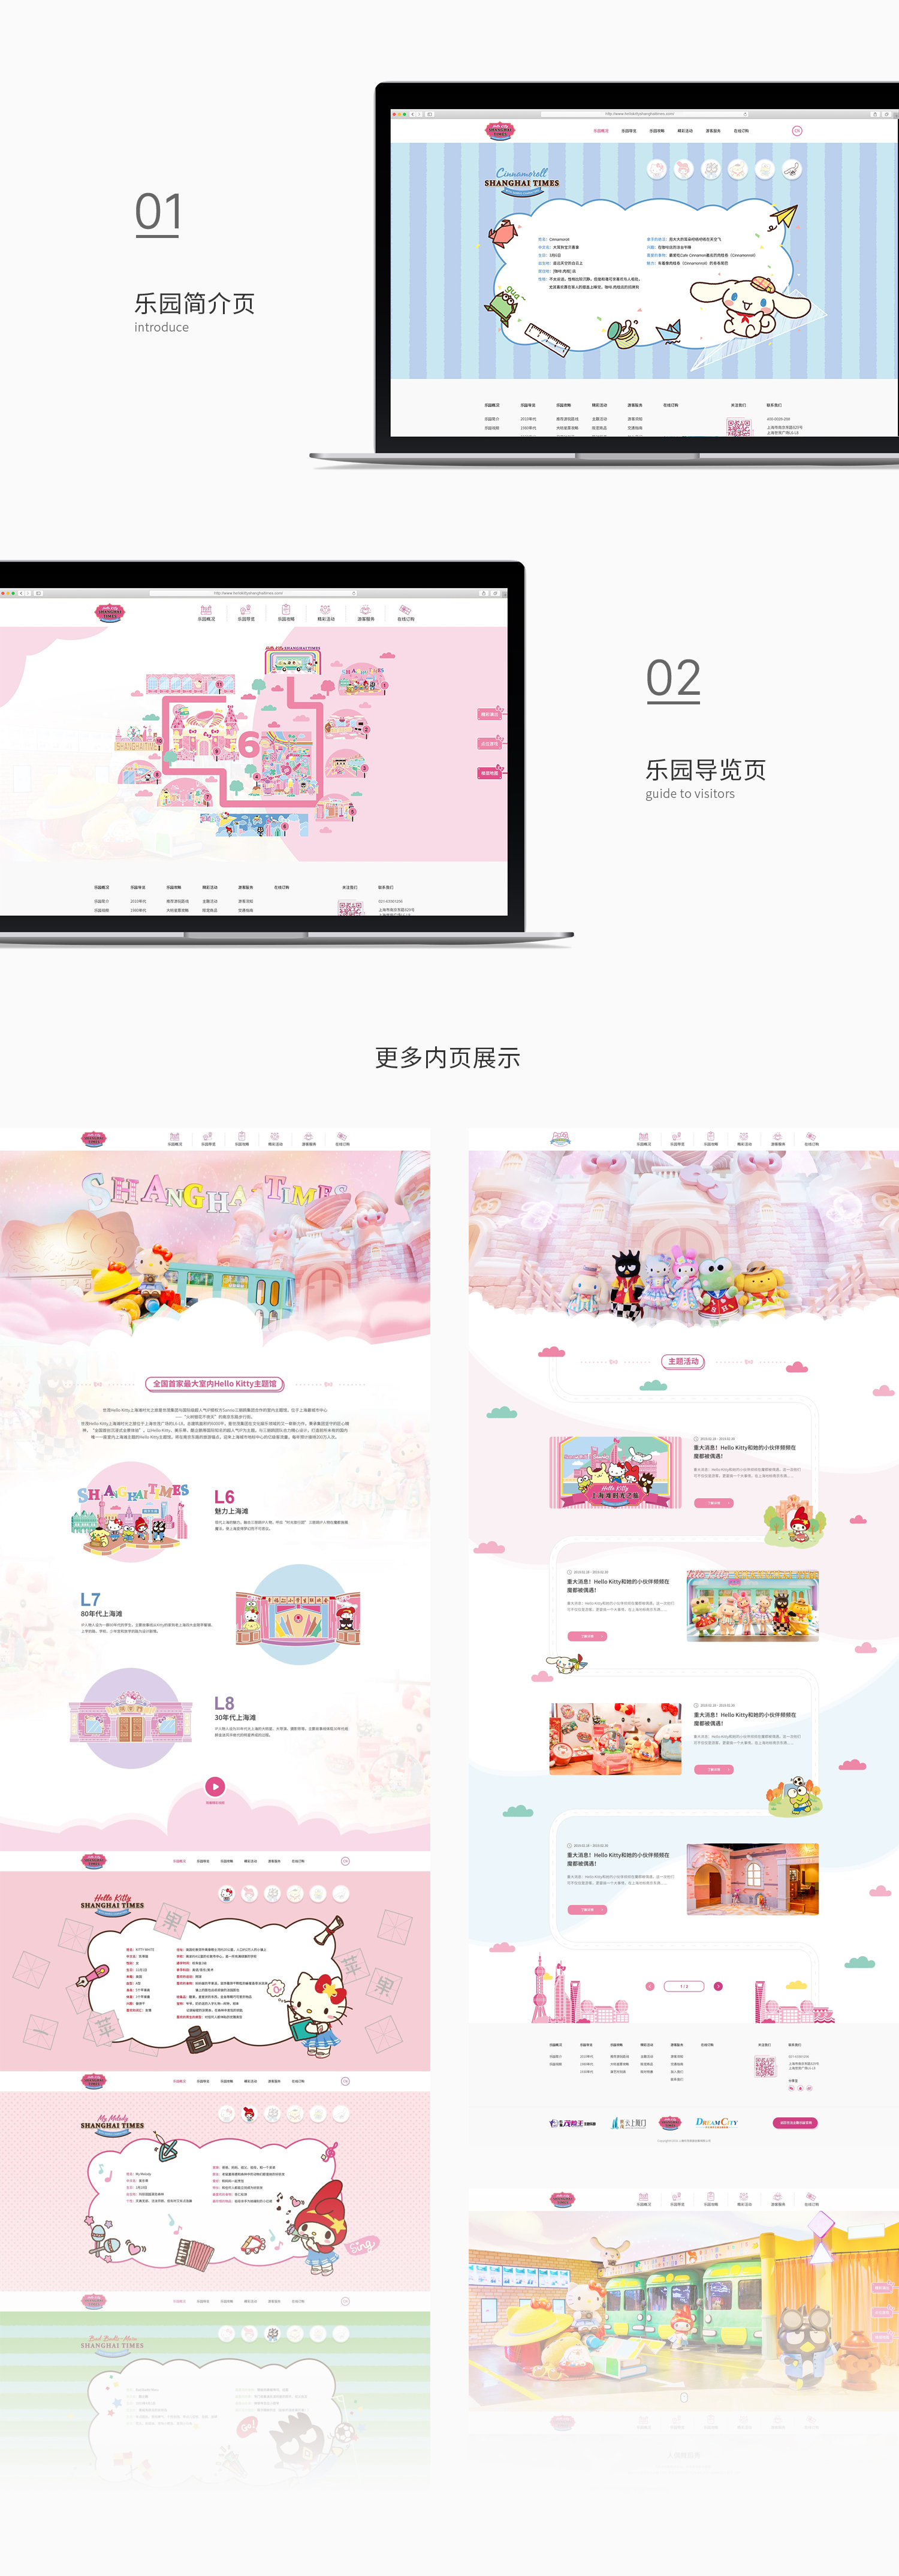 世茂hello kitty品牌网站建设-新媒体营销,新媒体广告公司,上海网络营销,微信代运营,高端网站建设,网站建设公司